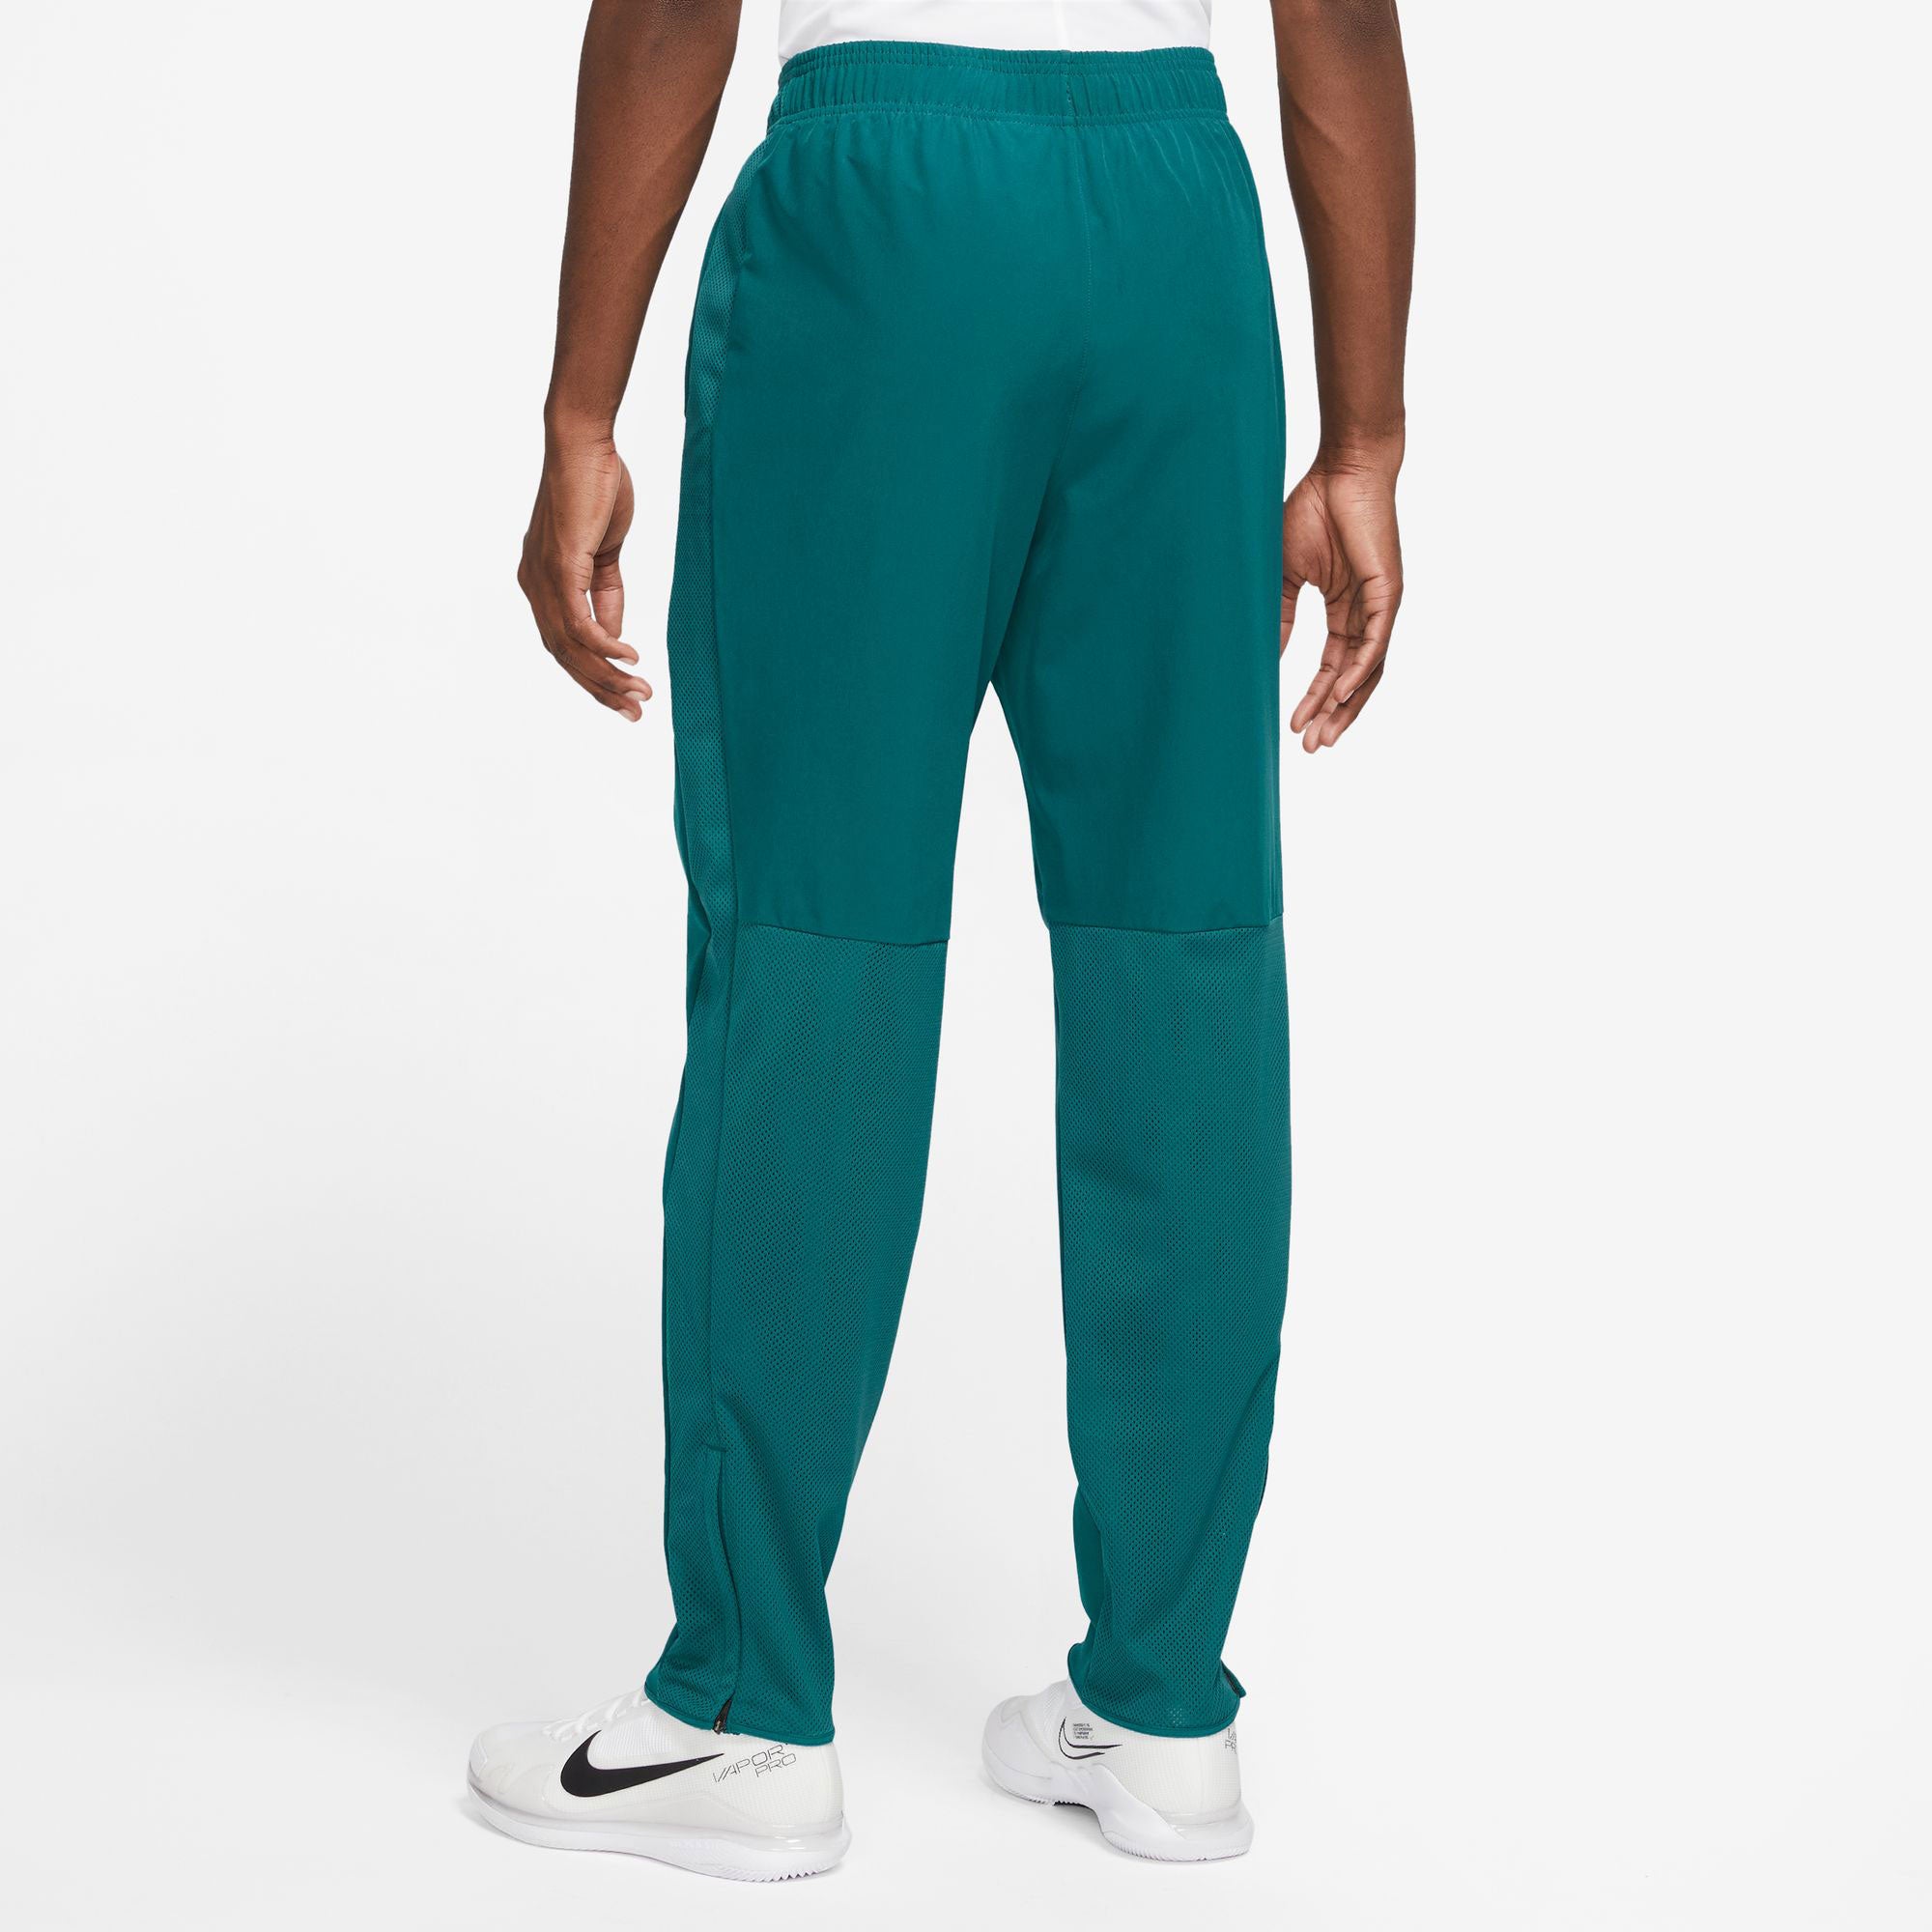 NikeCourt Advantage Men's Tennis Pants Green (2)